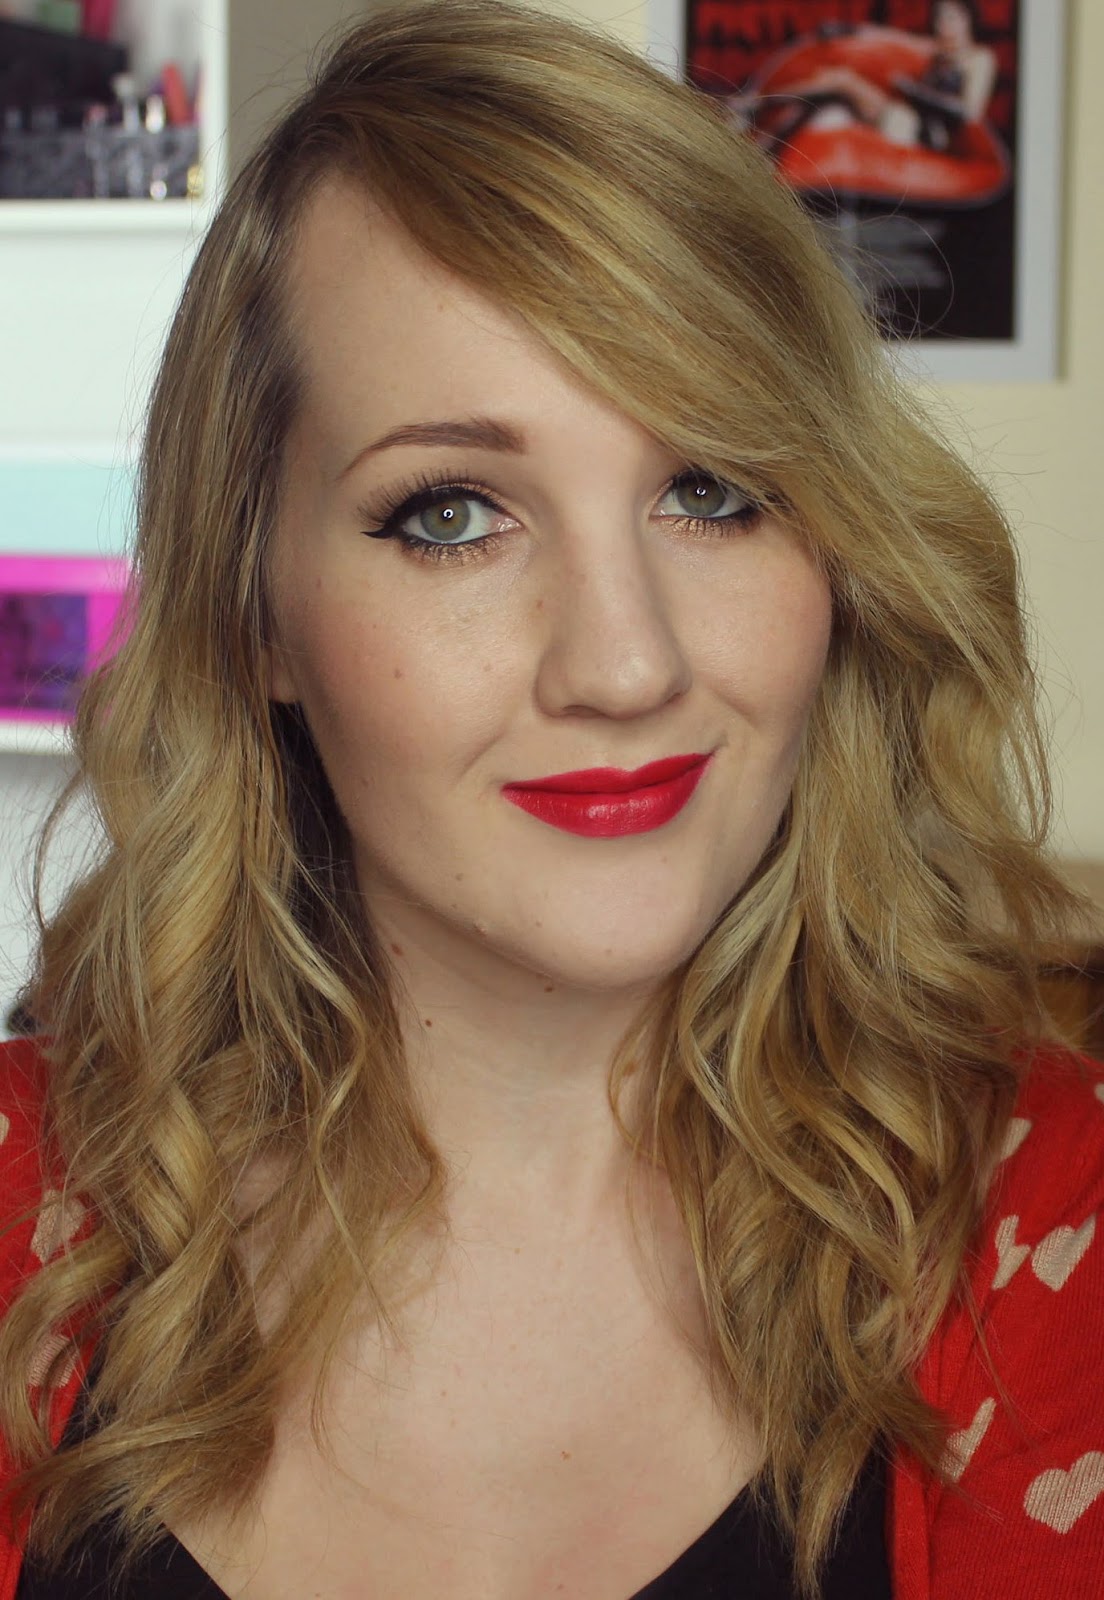 Karen Murrell True Love Lipstick Swatches & Review